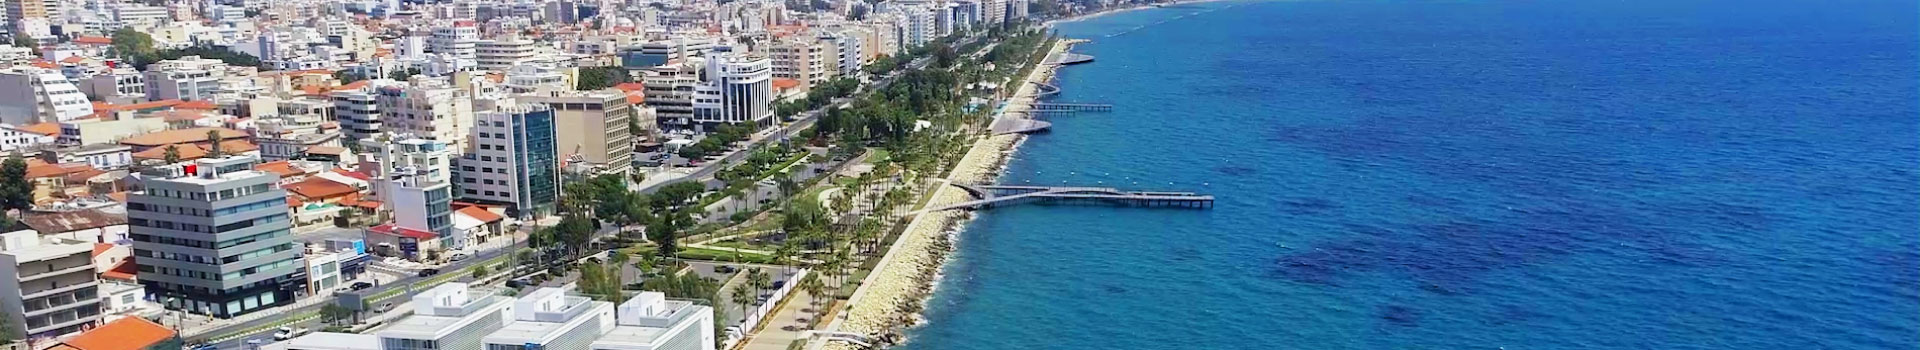 Застройщики рассказали, что россияне стали покупать больше недвижимости на Кипре